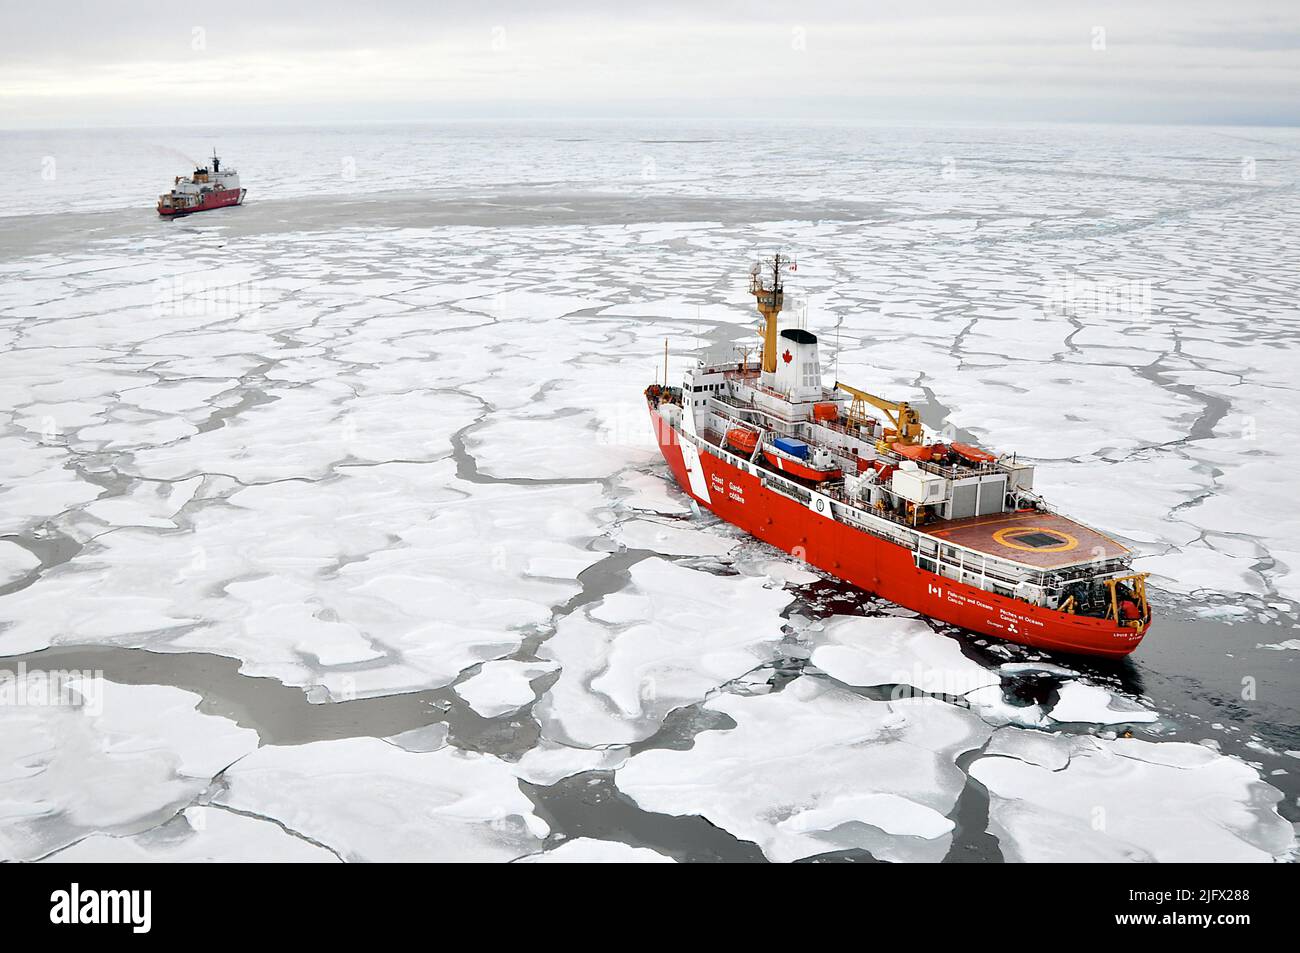 L'OCEANO ARTICO Ð la nave della Guardia Costiera canadese Louis S. St-Laurent si avvicina alla Cutter Healy della Guardia Costiera nell'Oceano Artico. Le due navi partecipano a un'indagine sull'Artico pluriennale e multiagenzia che contribuirà a definire la piattaforma continentale dell'Artico. Arctic Ocean, settembre (2009) credito: P.Kelley, USCG Foto Stock